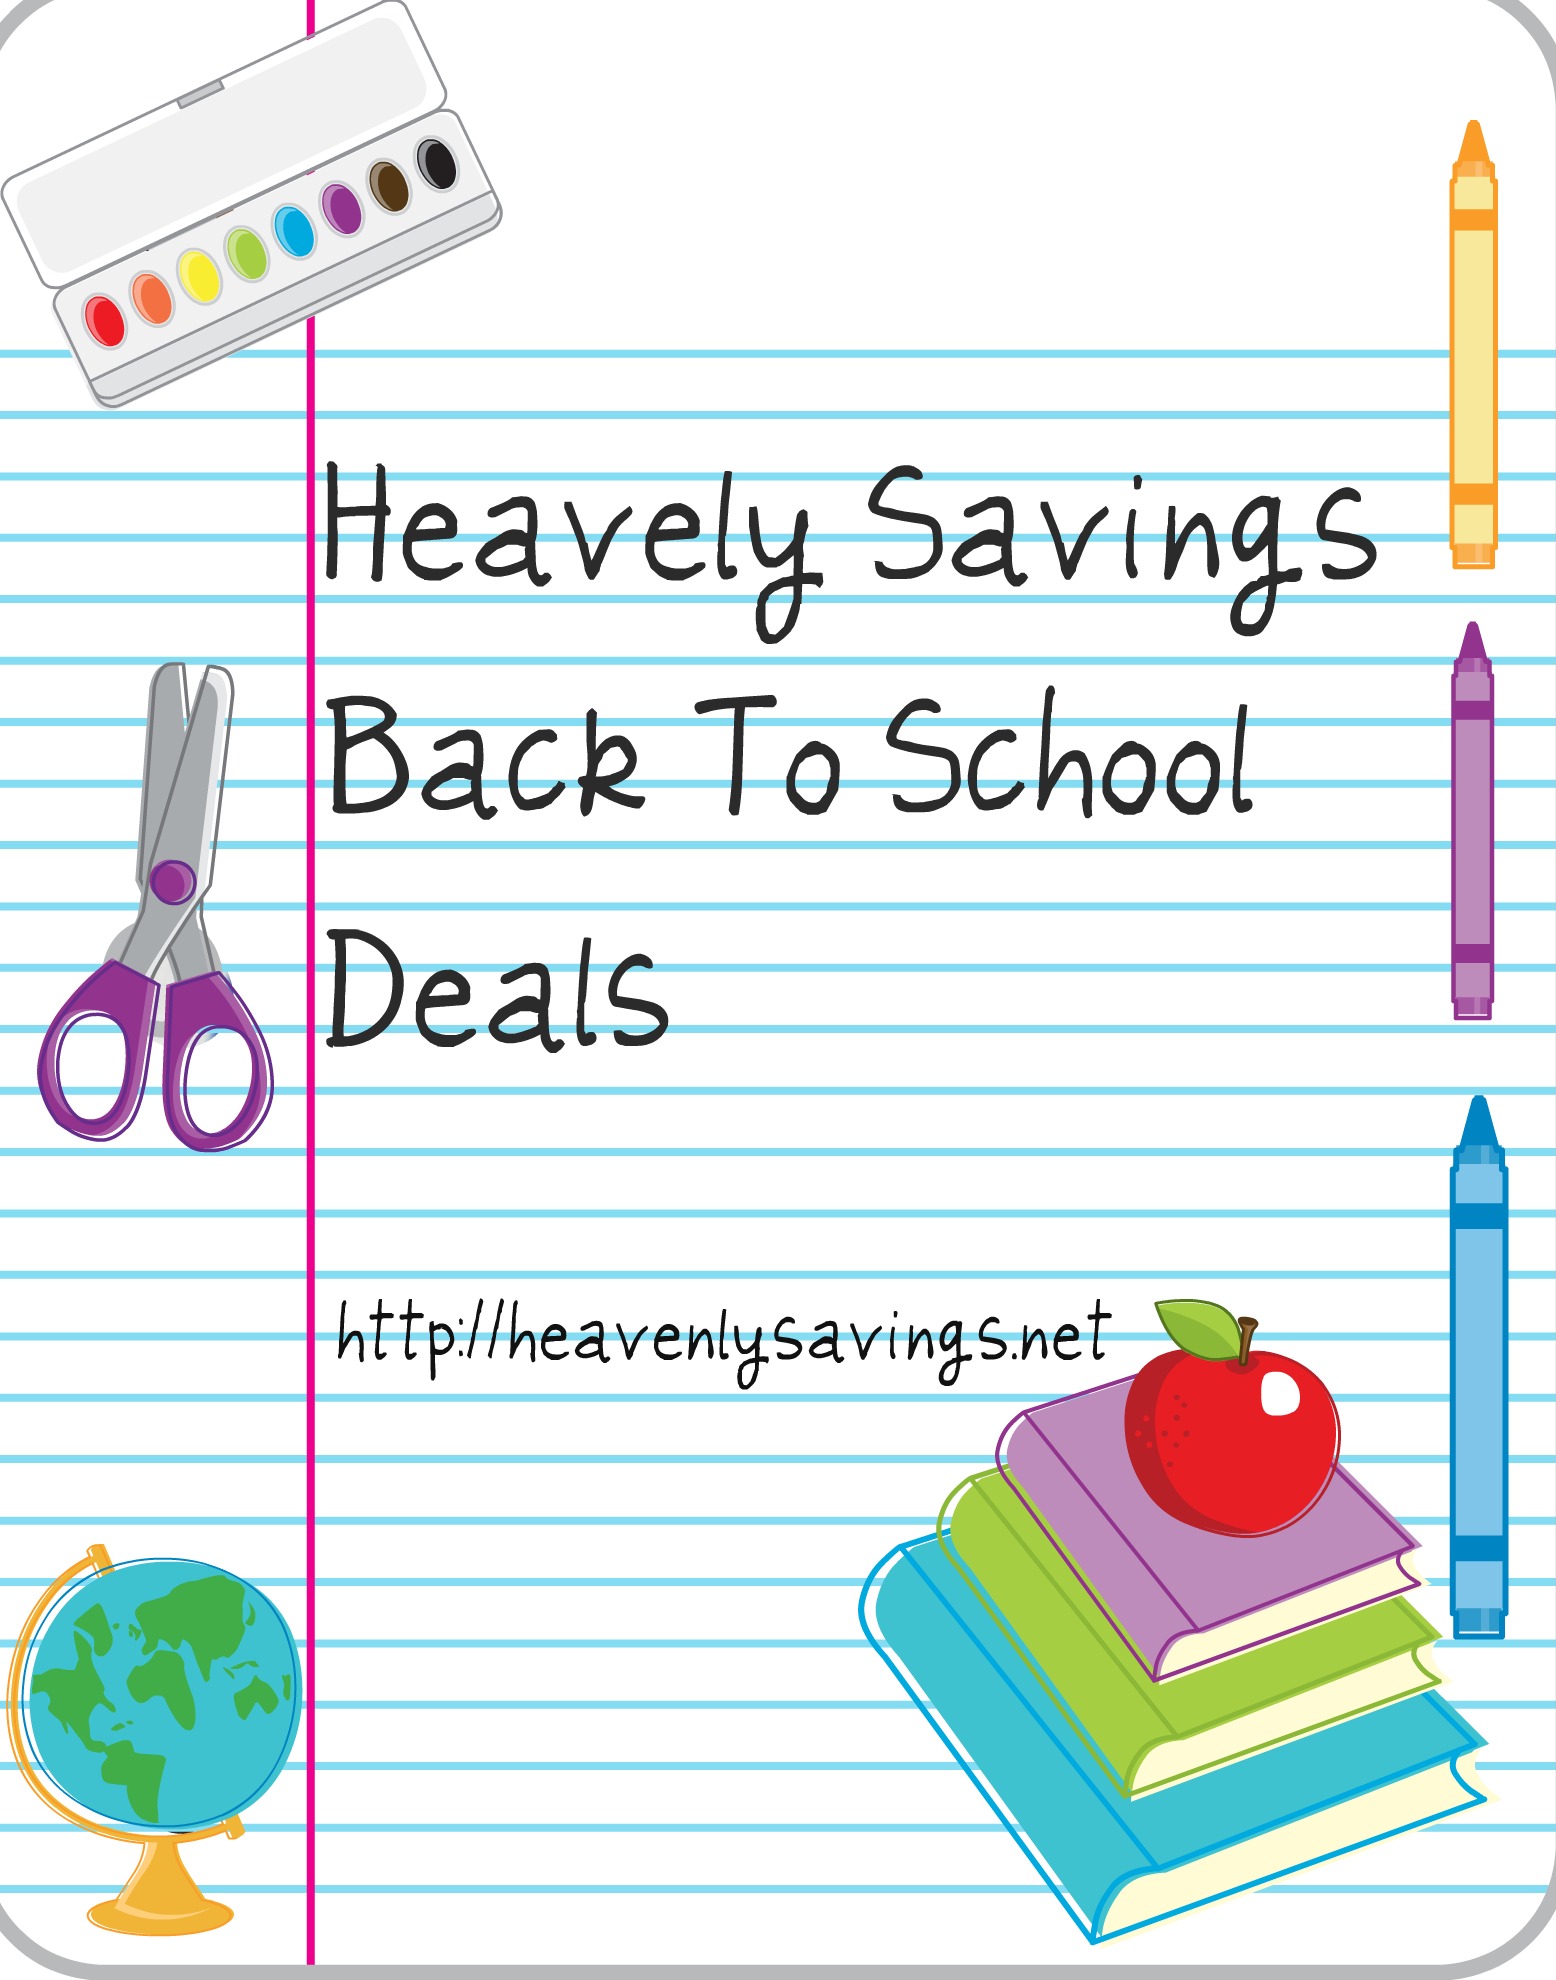 *HOT* Walmart Back to School Deals Under $1!